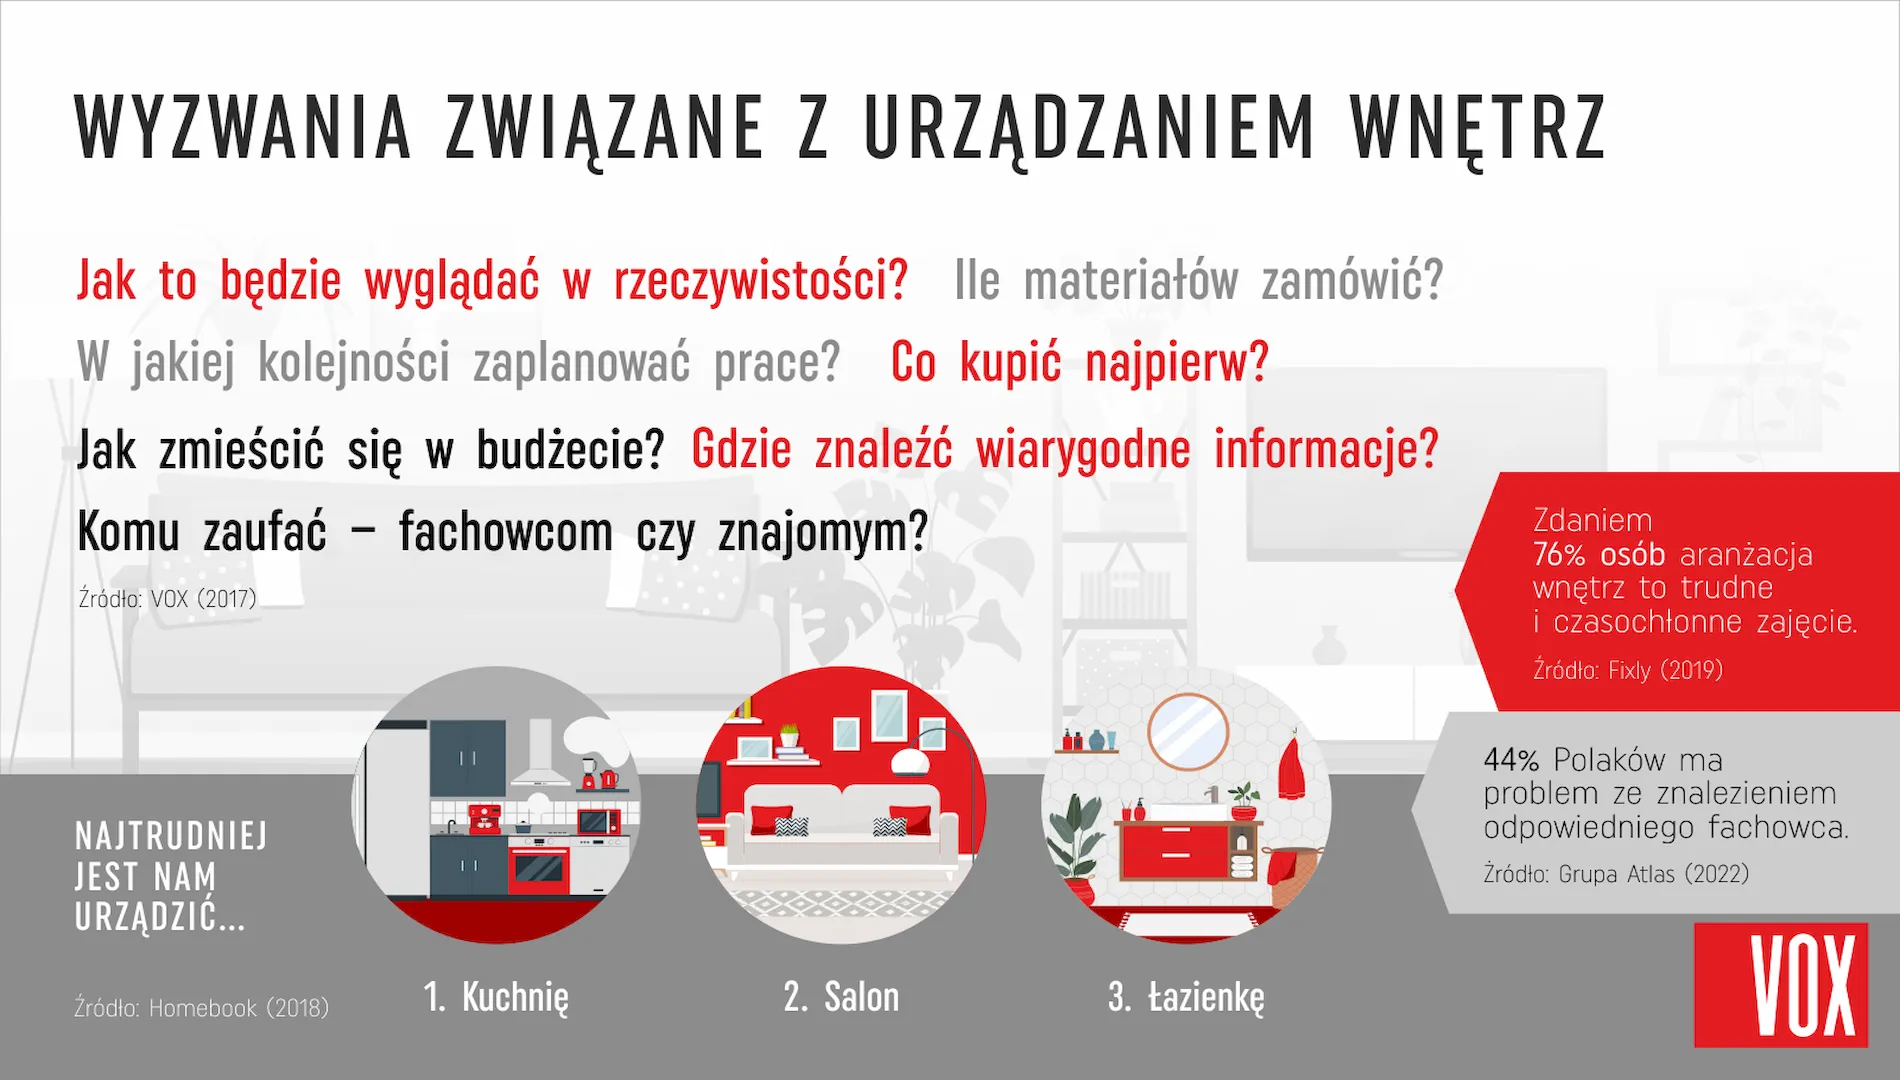 Co Polacy chcieliby zmienić w swoich domach?